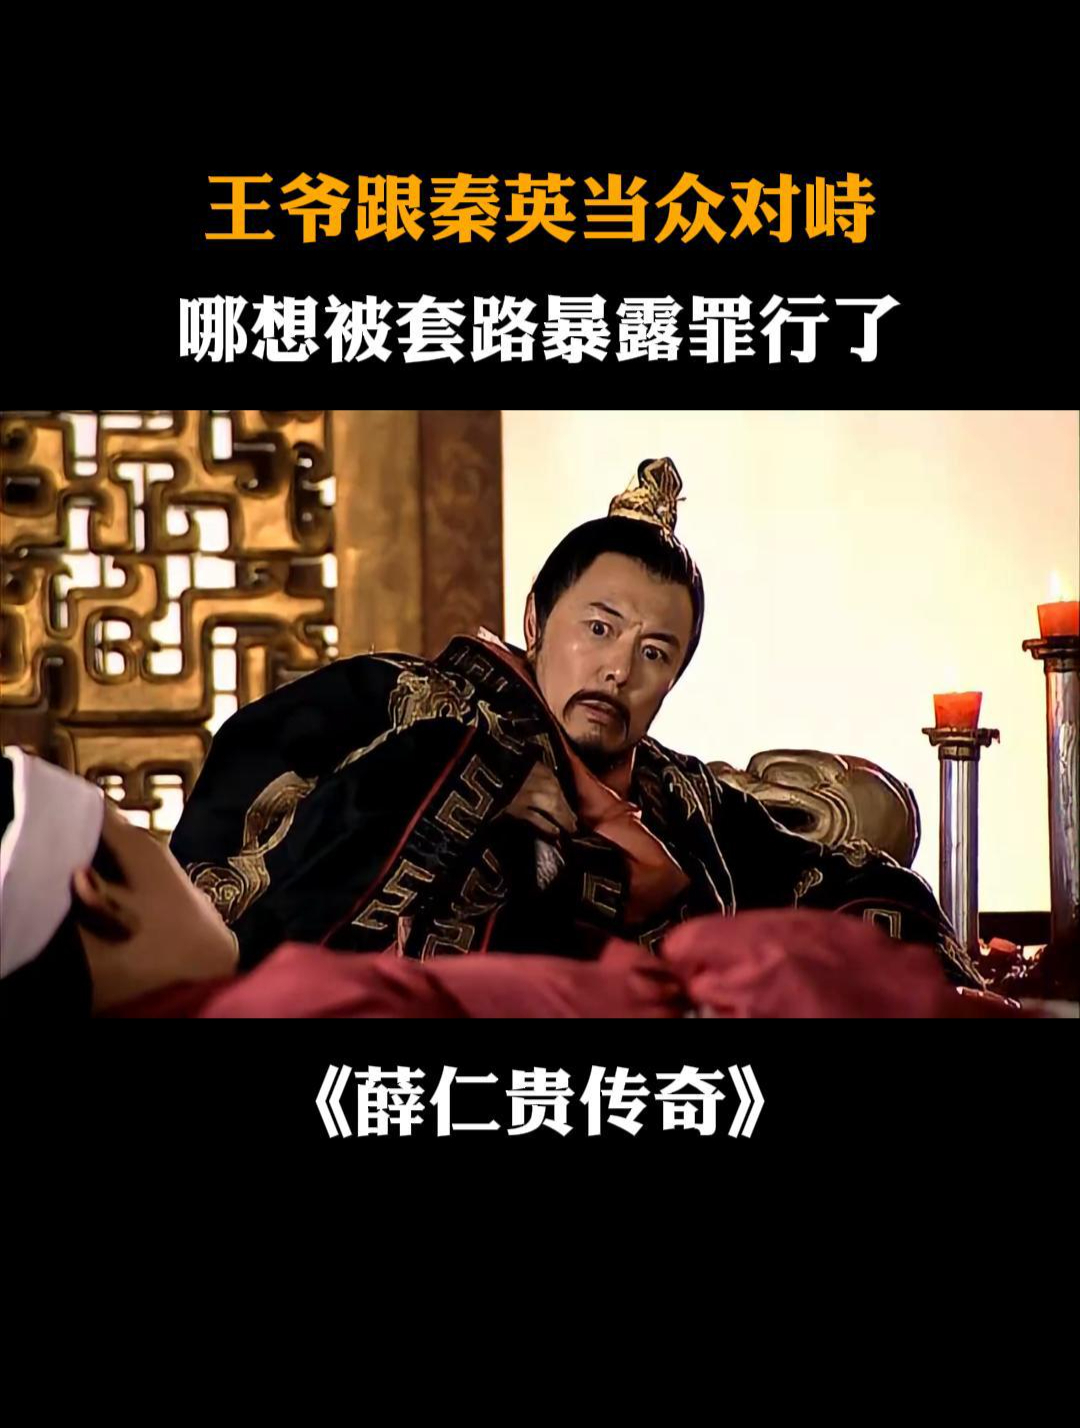 薛仁贵传奇:王爷跟秦英当众对峙,哪想被套路暴露罪行了